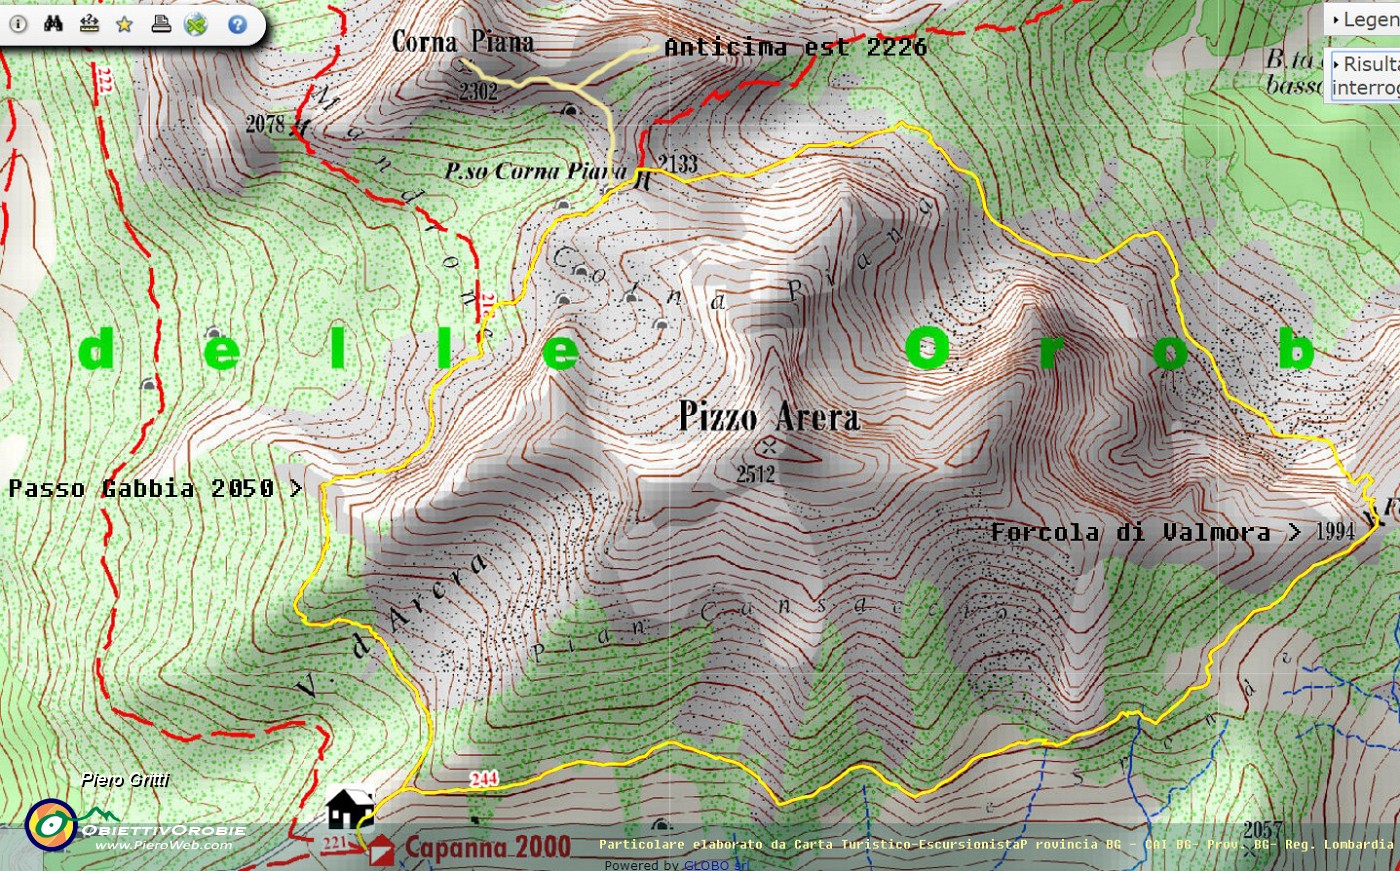 09 Mappa-Perplo Arera con Corna Piana da Capanna 2000.jpg